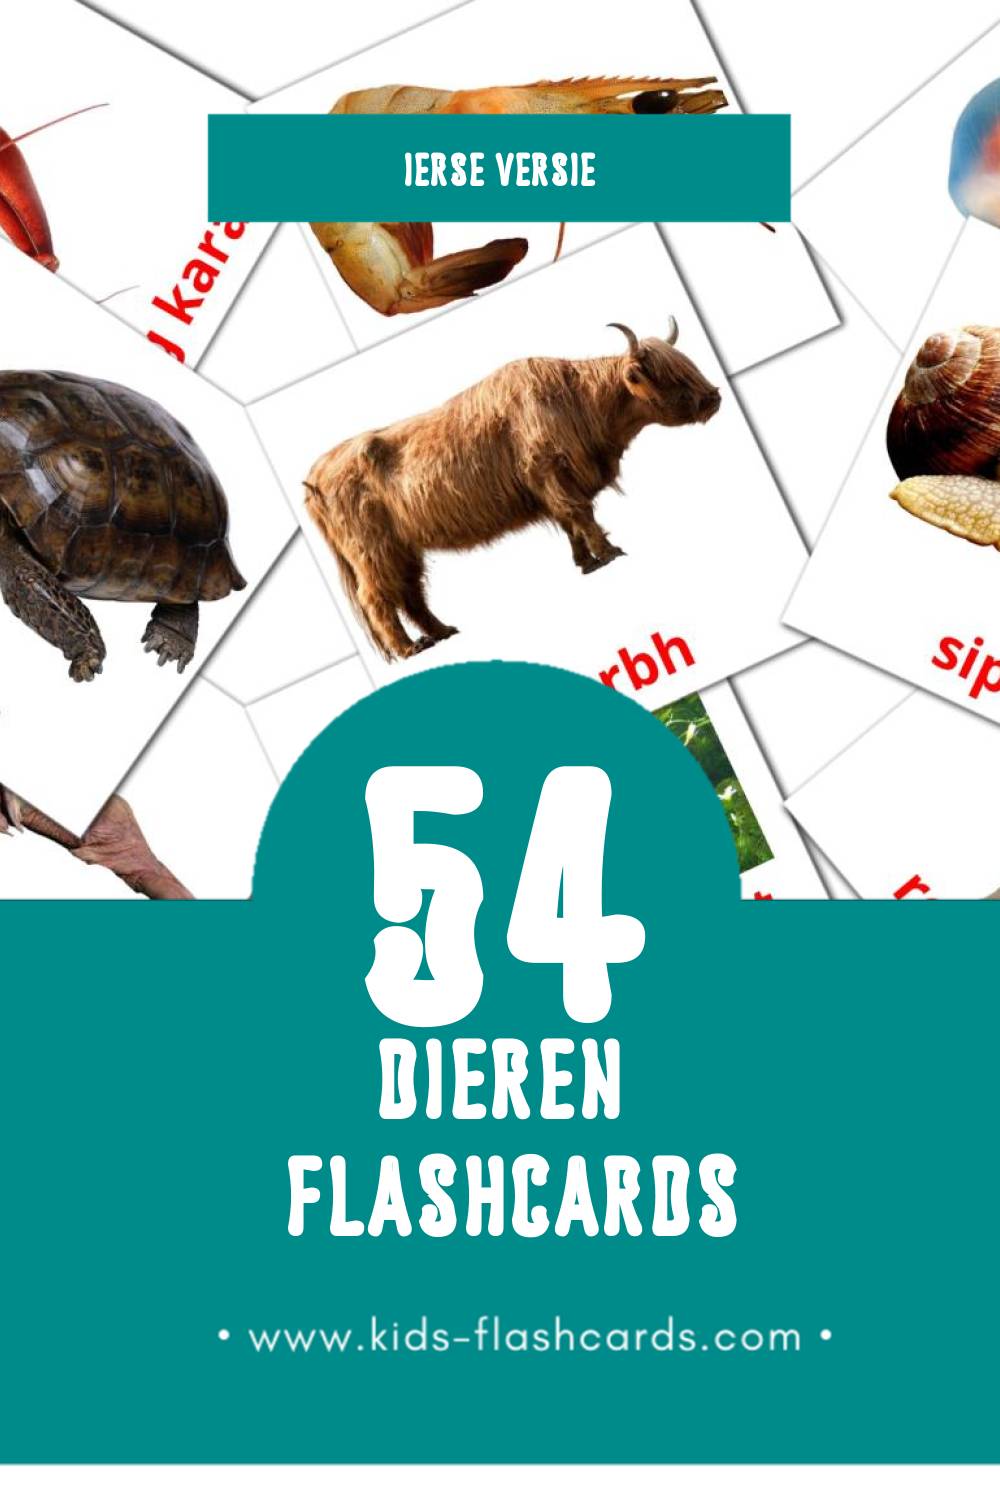 Visuele ainmhithe Flashcards voor Kleuters (54 kaarten in het Iers)